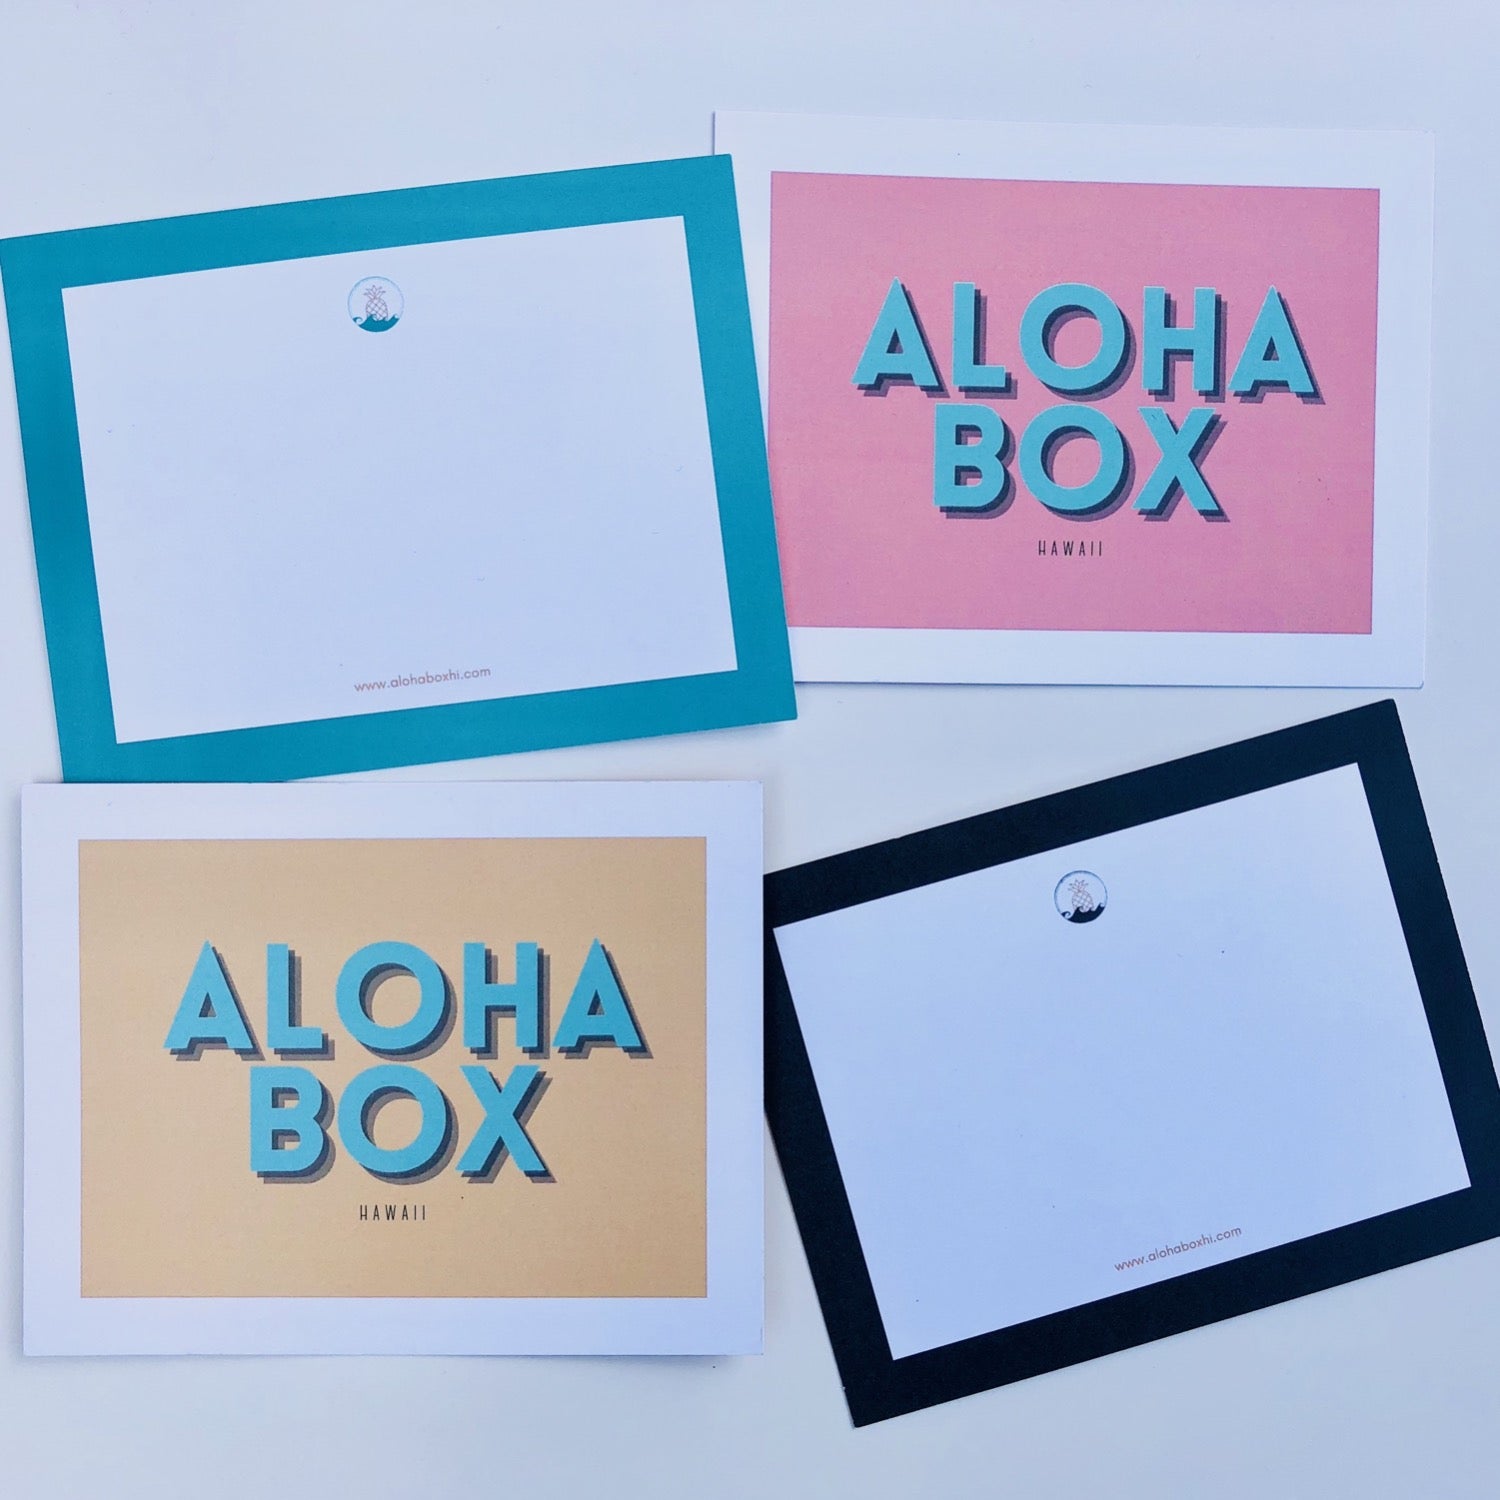 Aloha box company note card